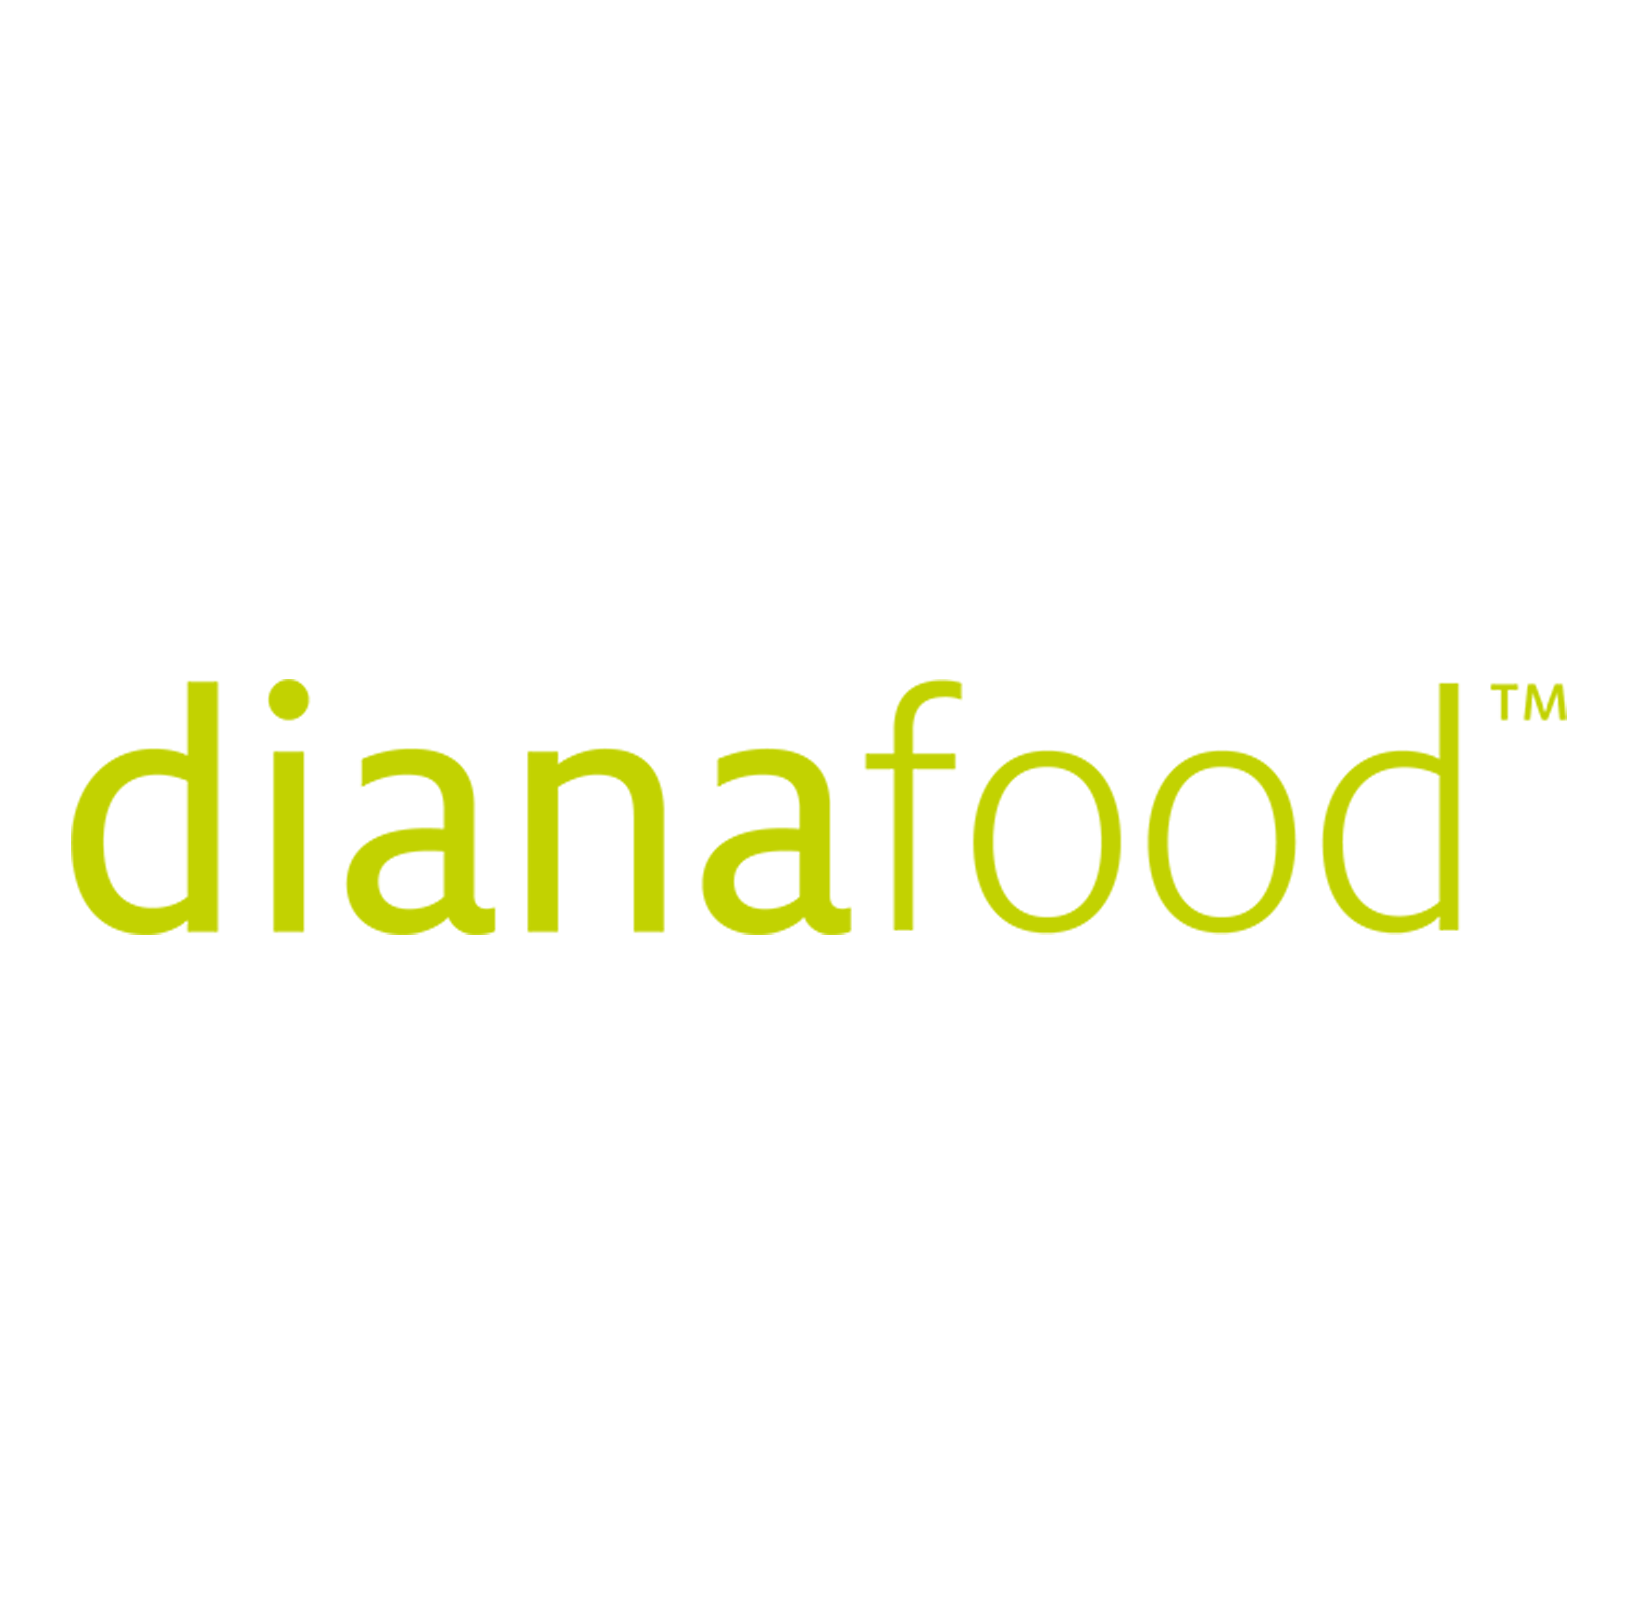 DianaFood-logo